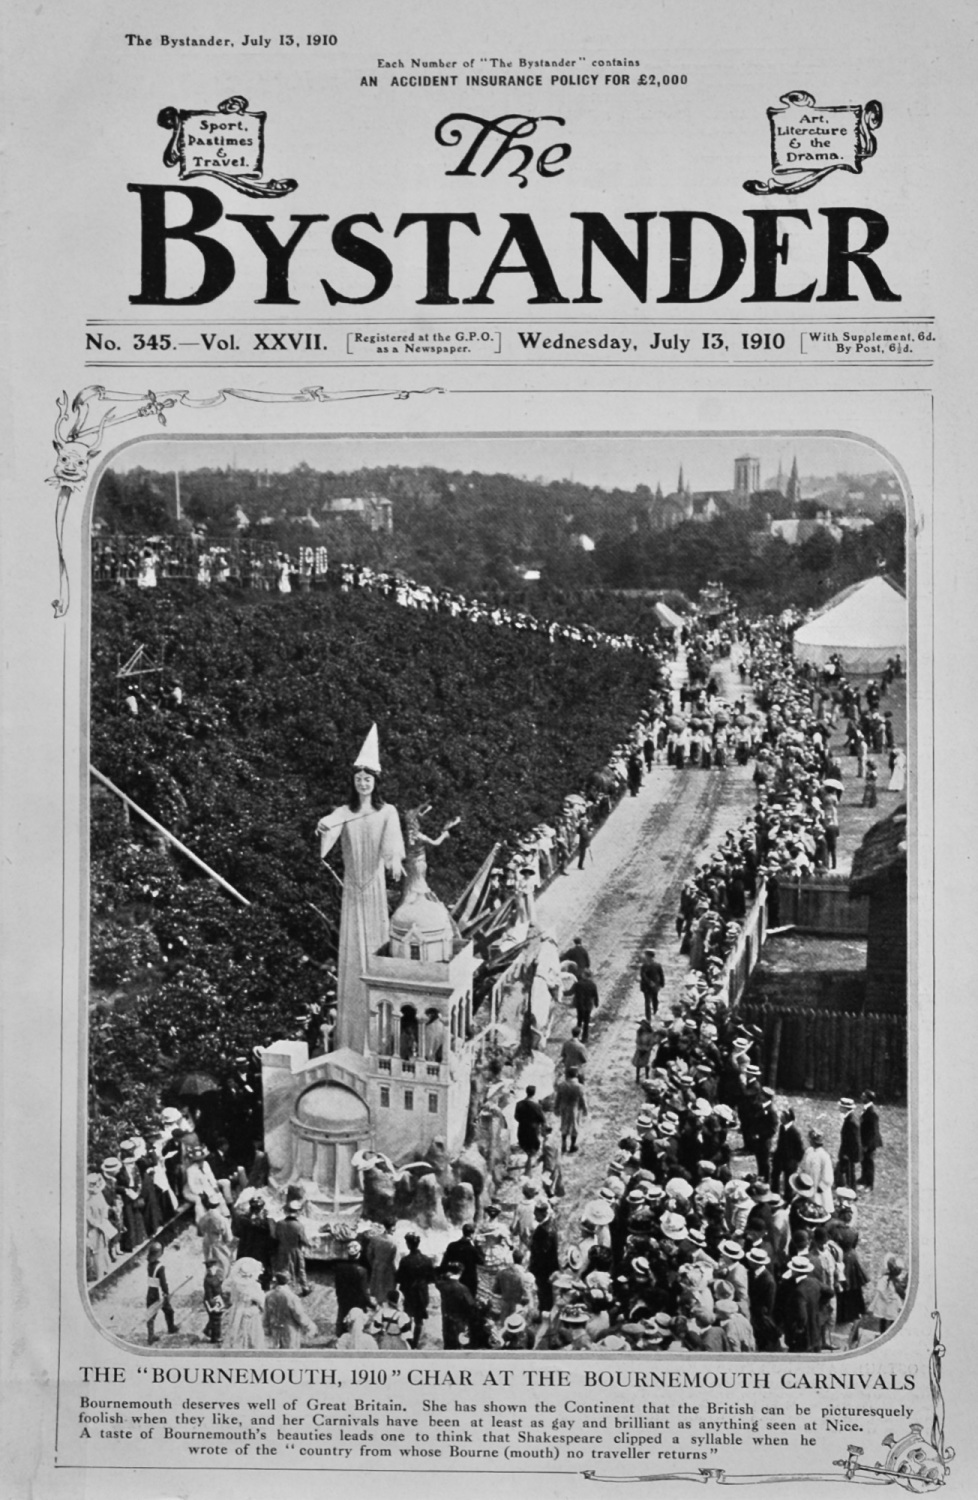 The Bystander Jul 13th 1910.